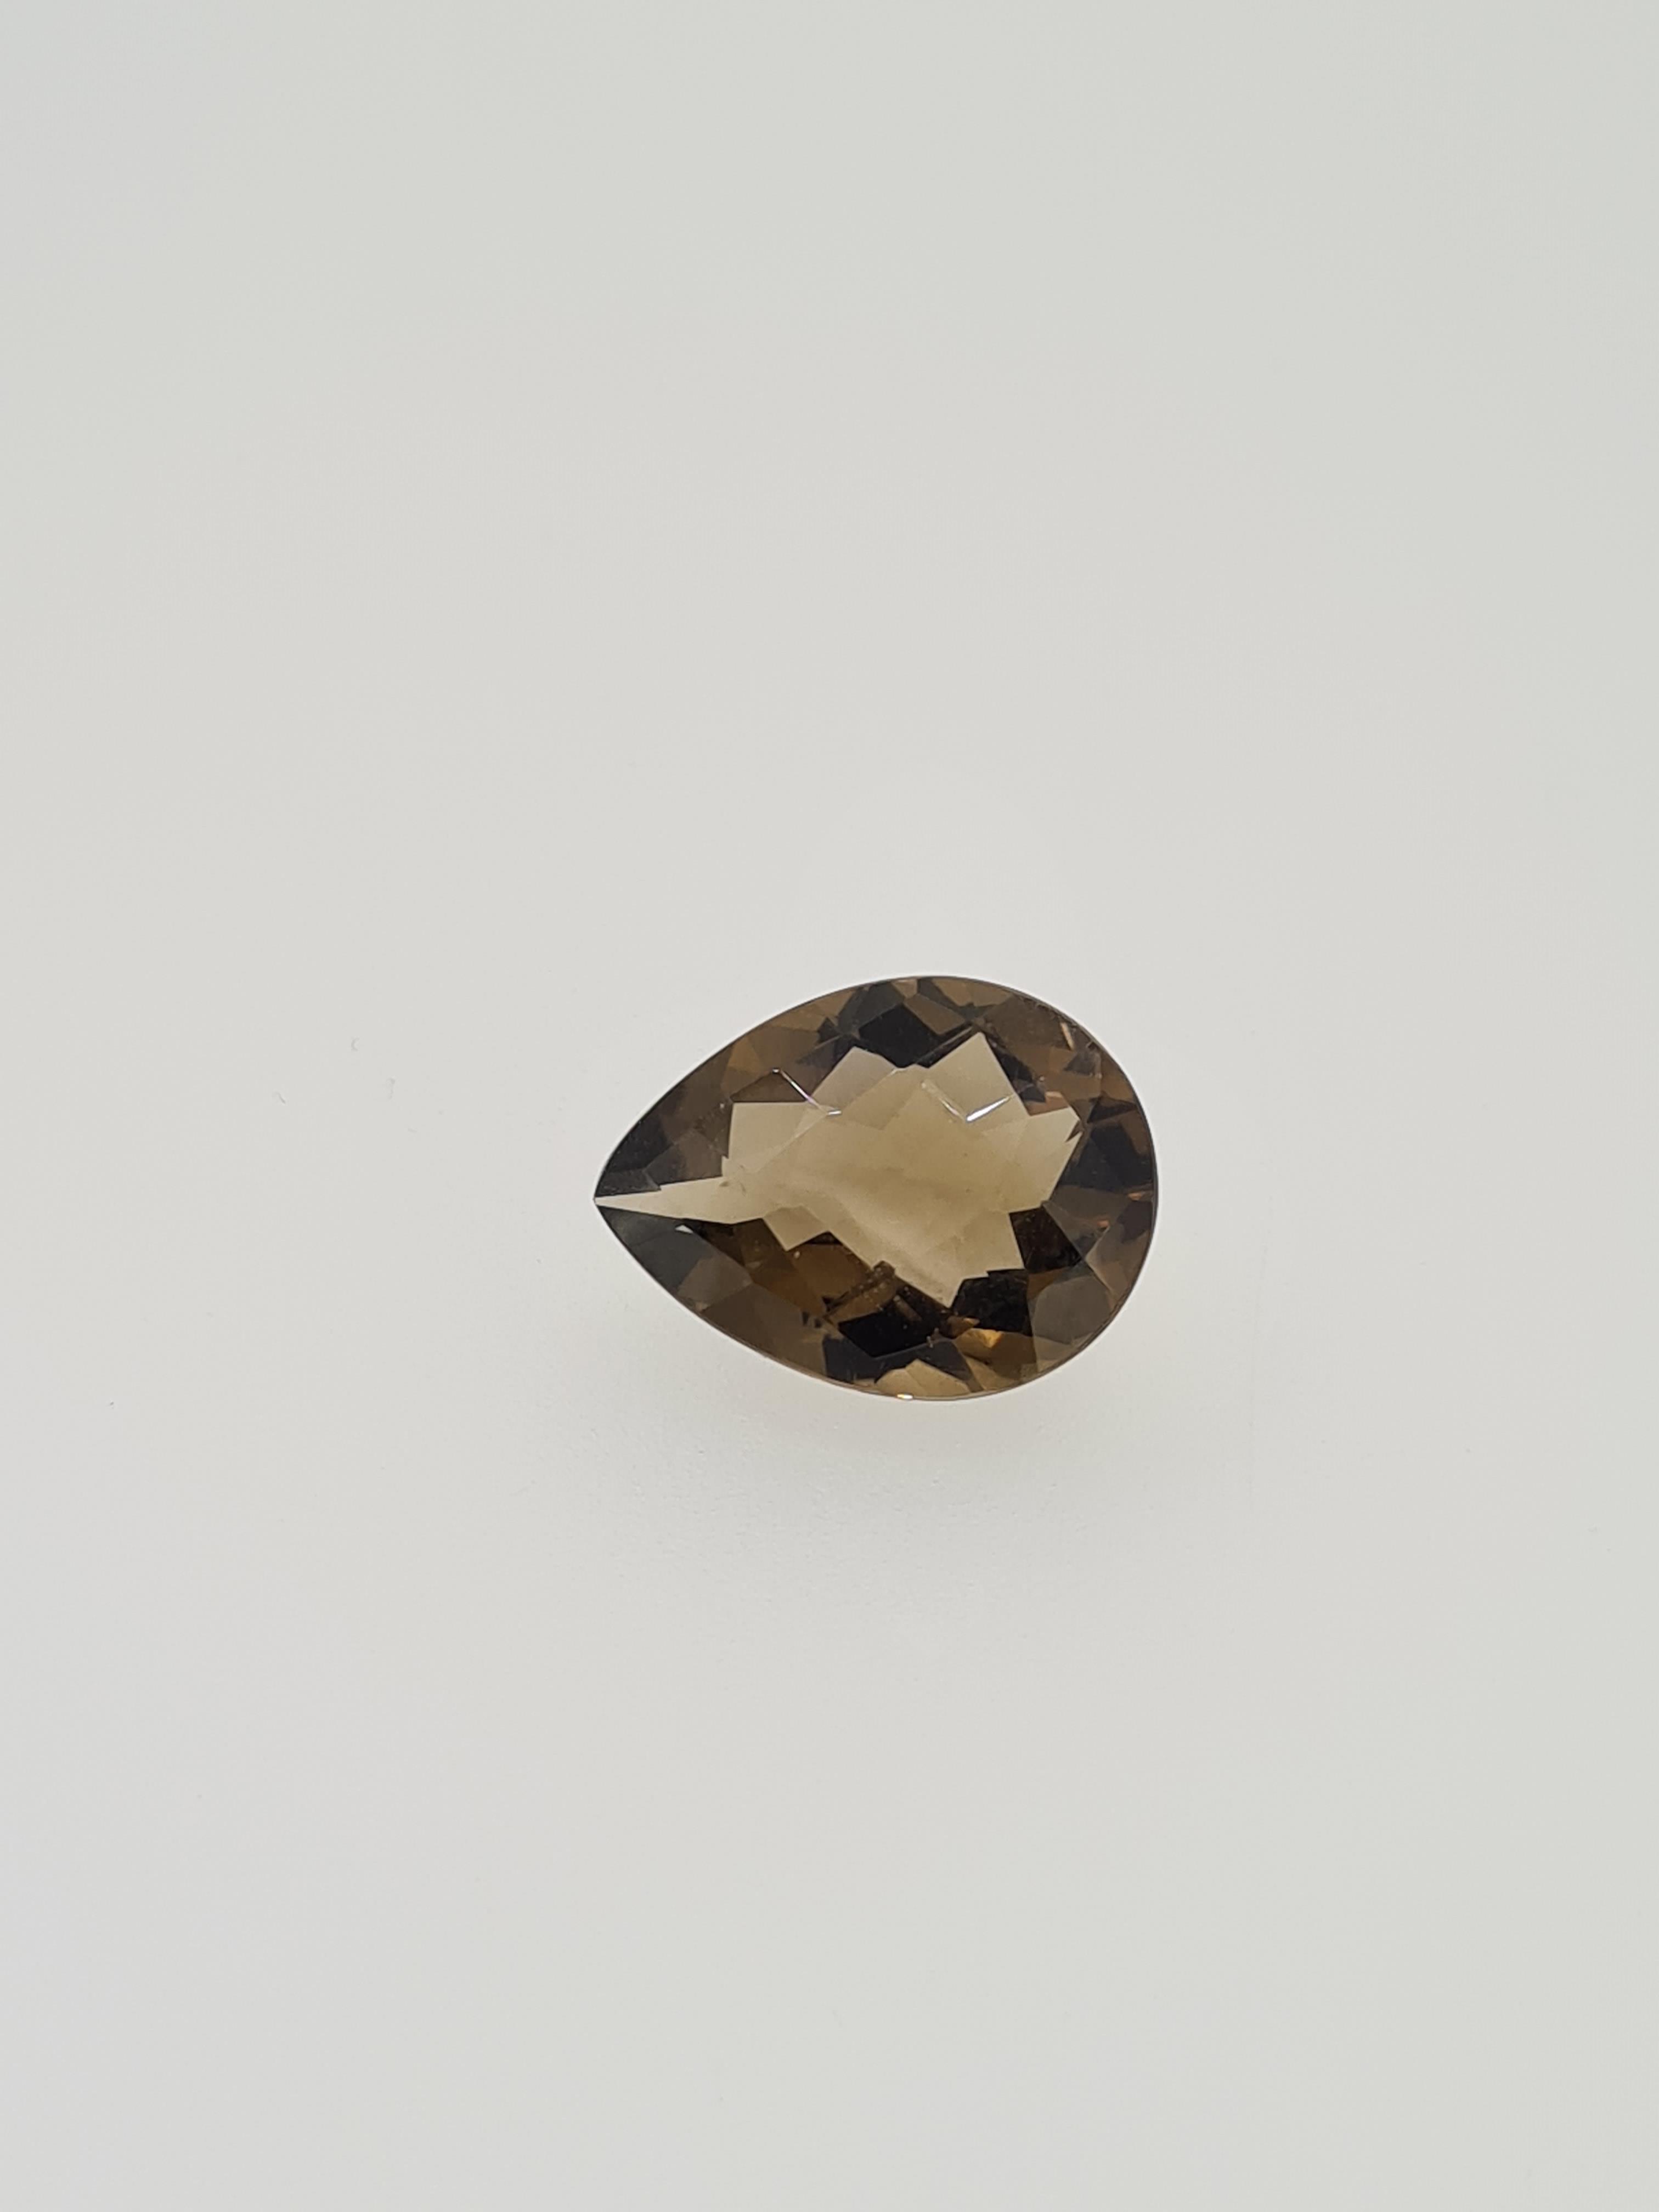 Smokey qaurtz pear cut gem stone - Image 4 of 4